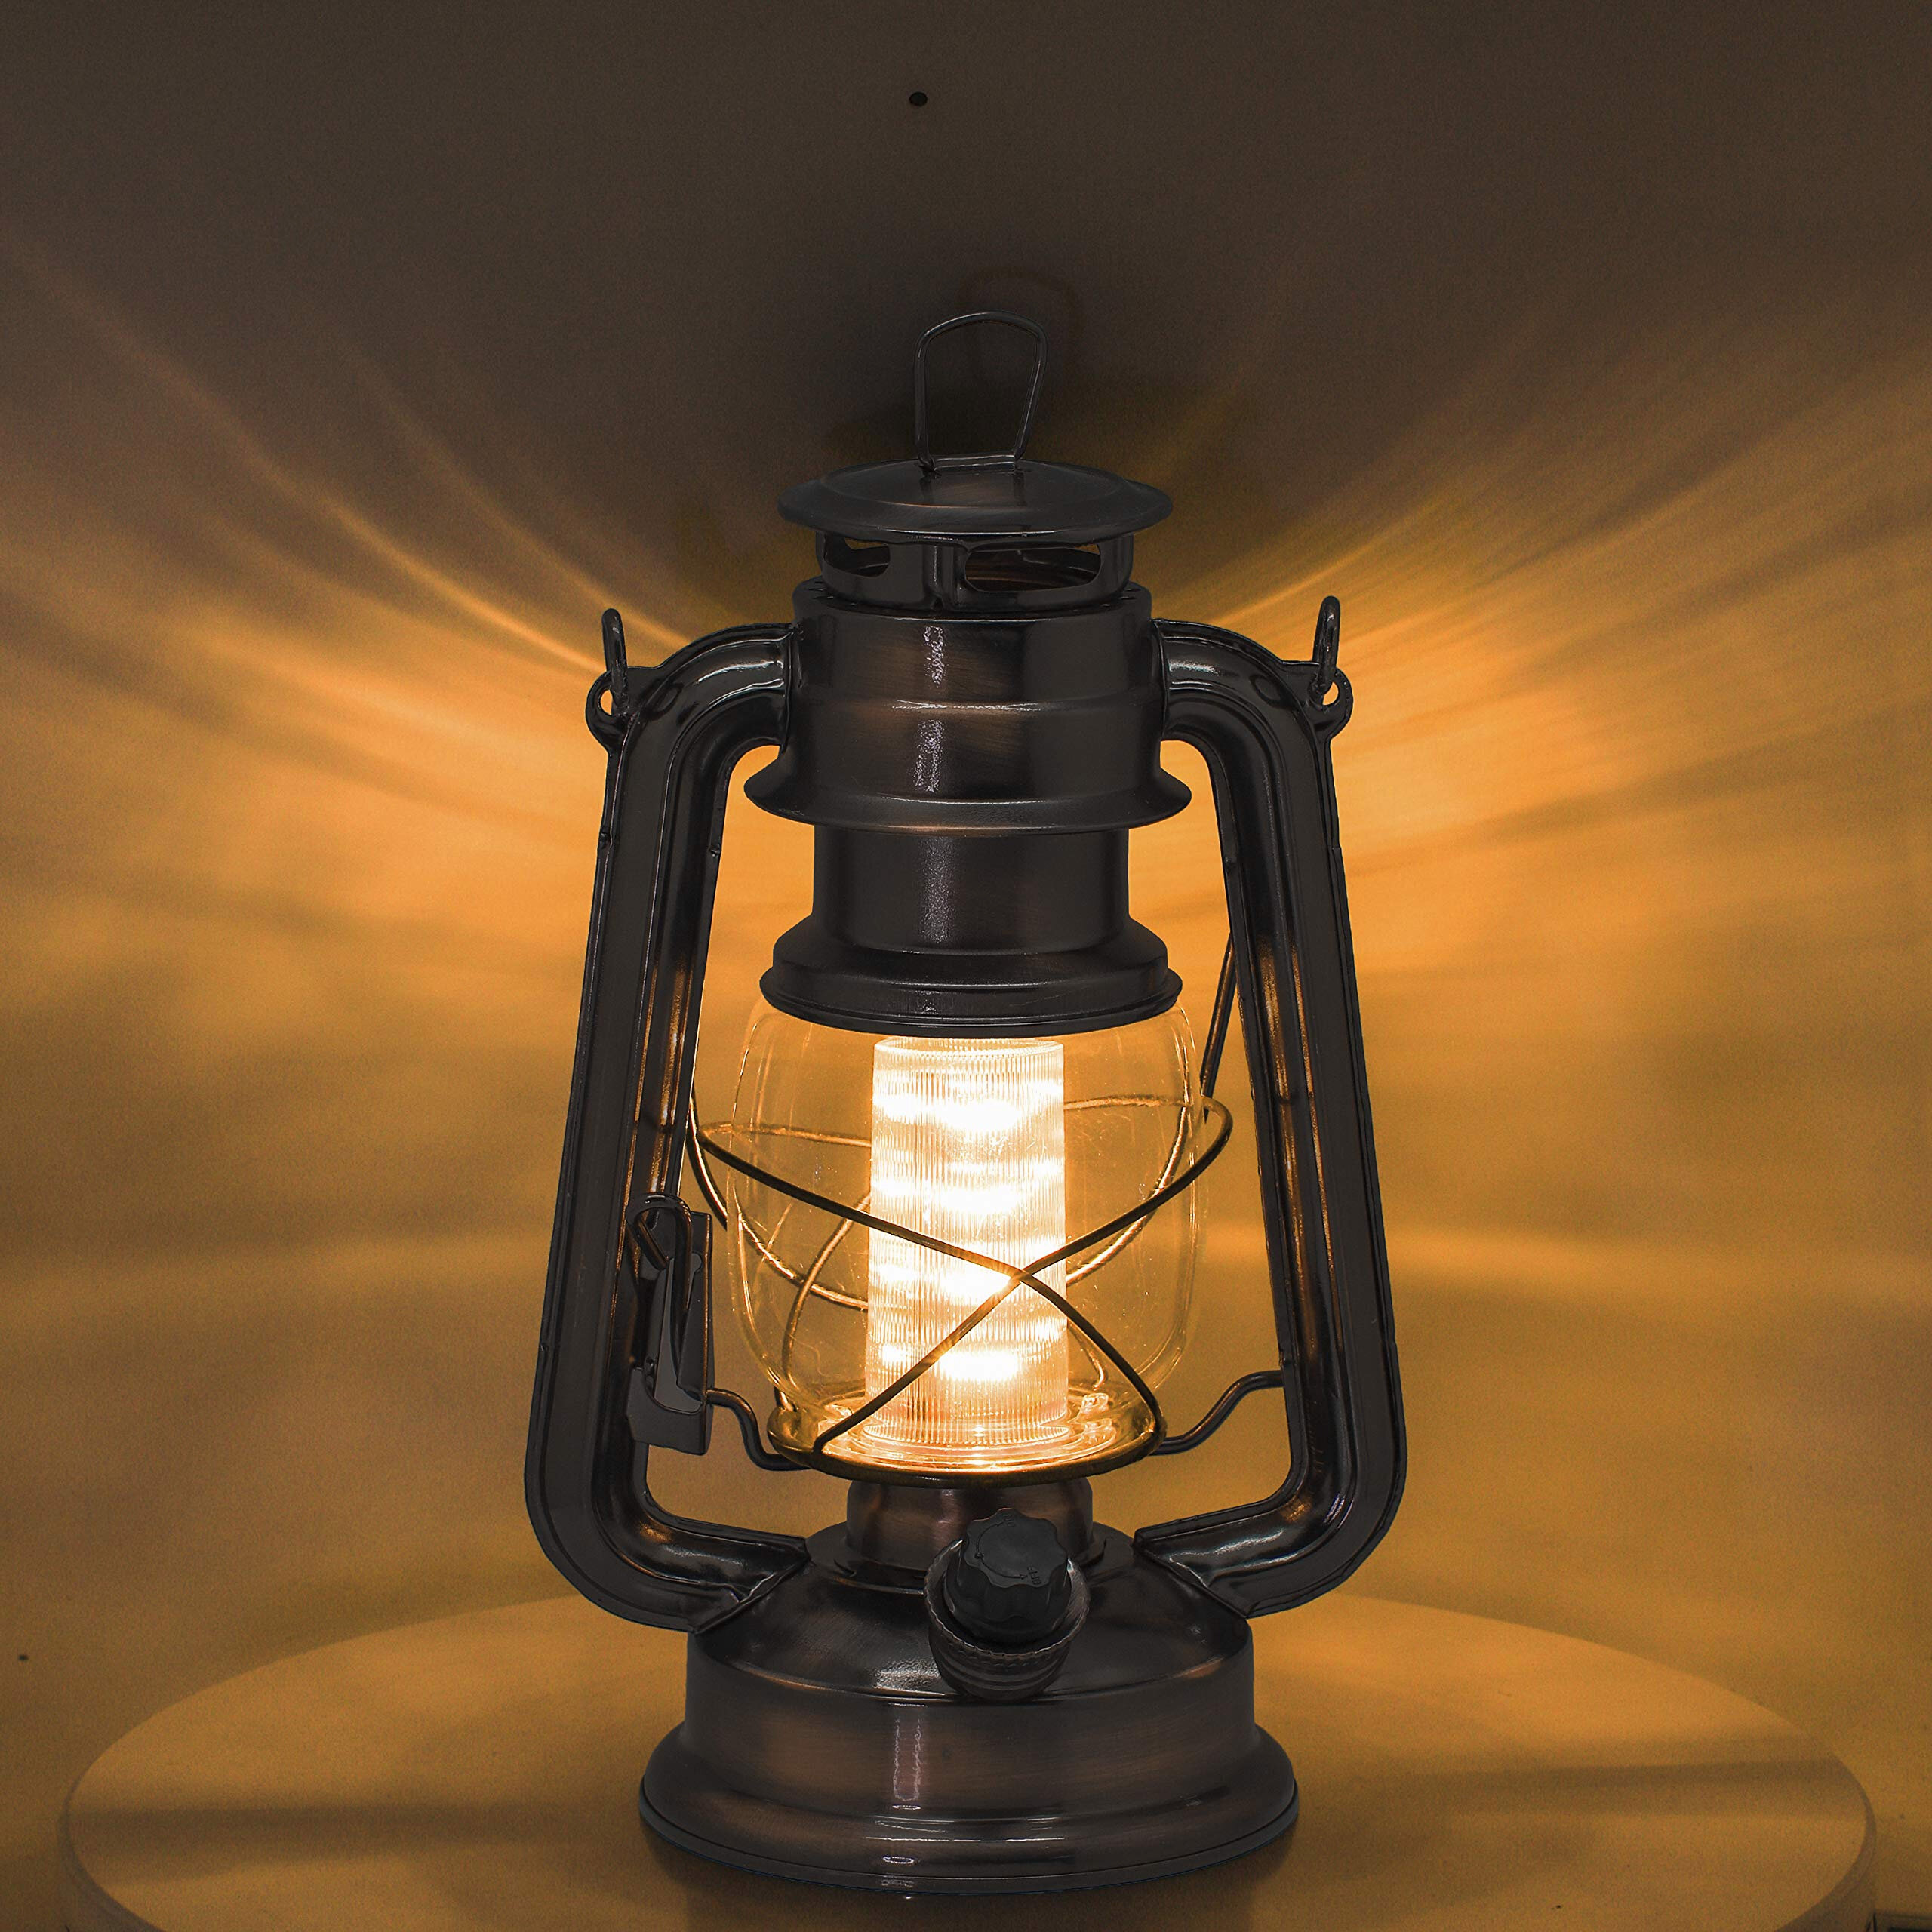 Christmas Lanterns Vintage Lantern lamp Flame lamp Light Antique Copper Lantern Flickering LED Hanging Metal Lantern